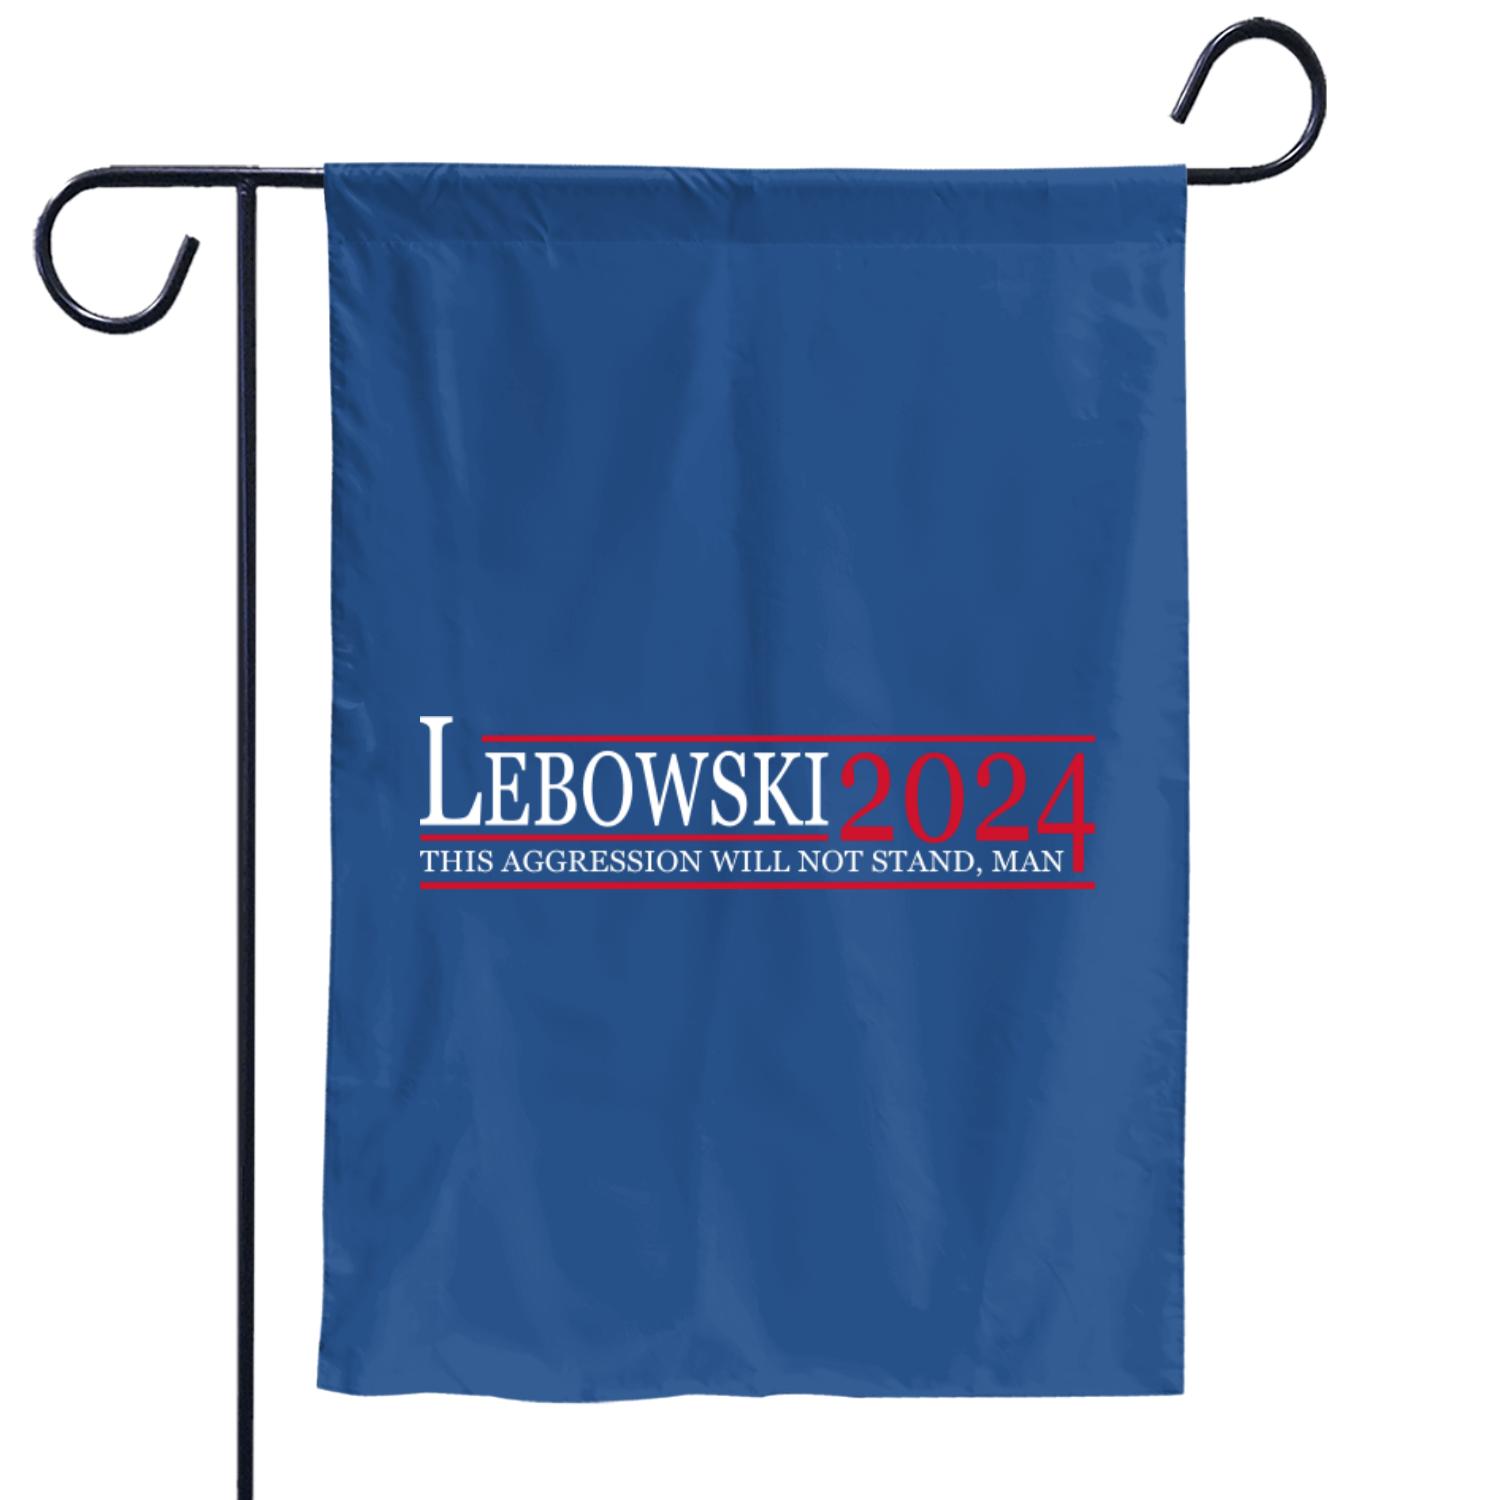 Lebowski 2024, Lebowski Political Garden Flags, The Big Lebowski Garden